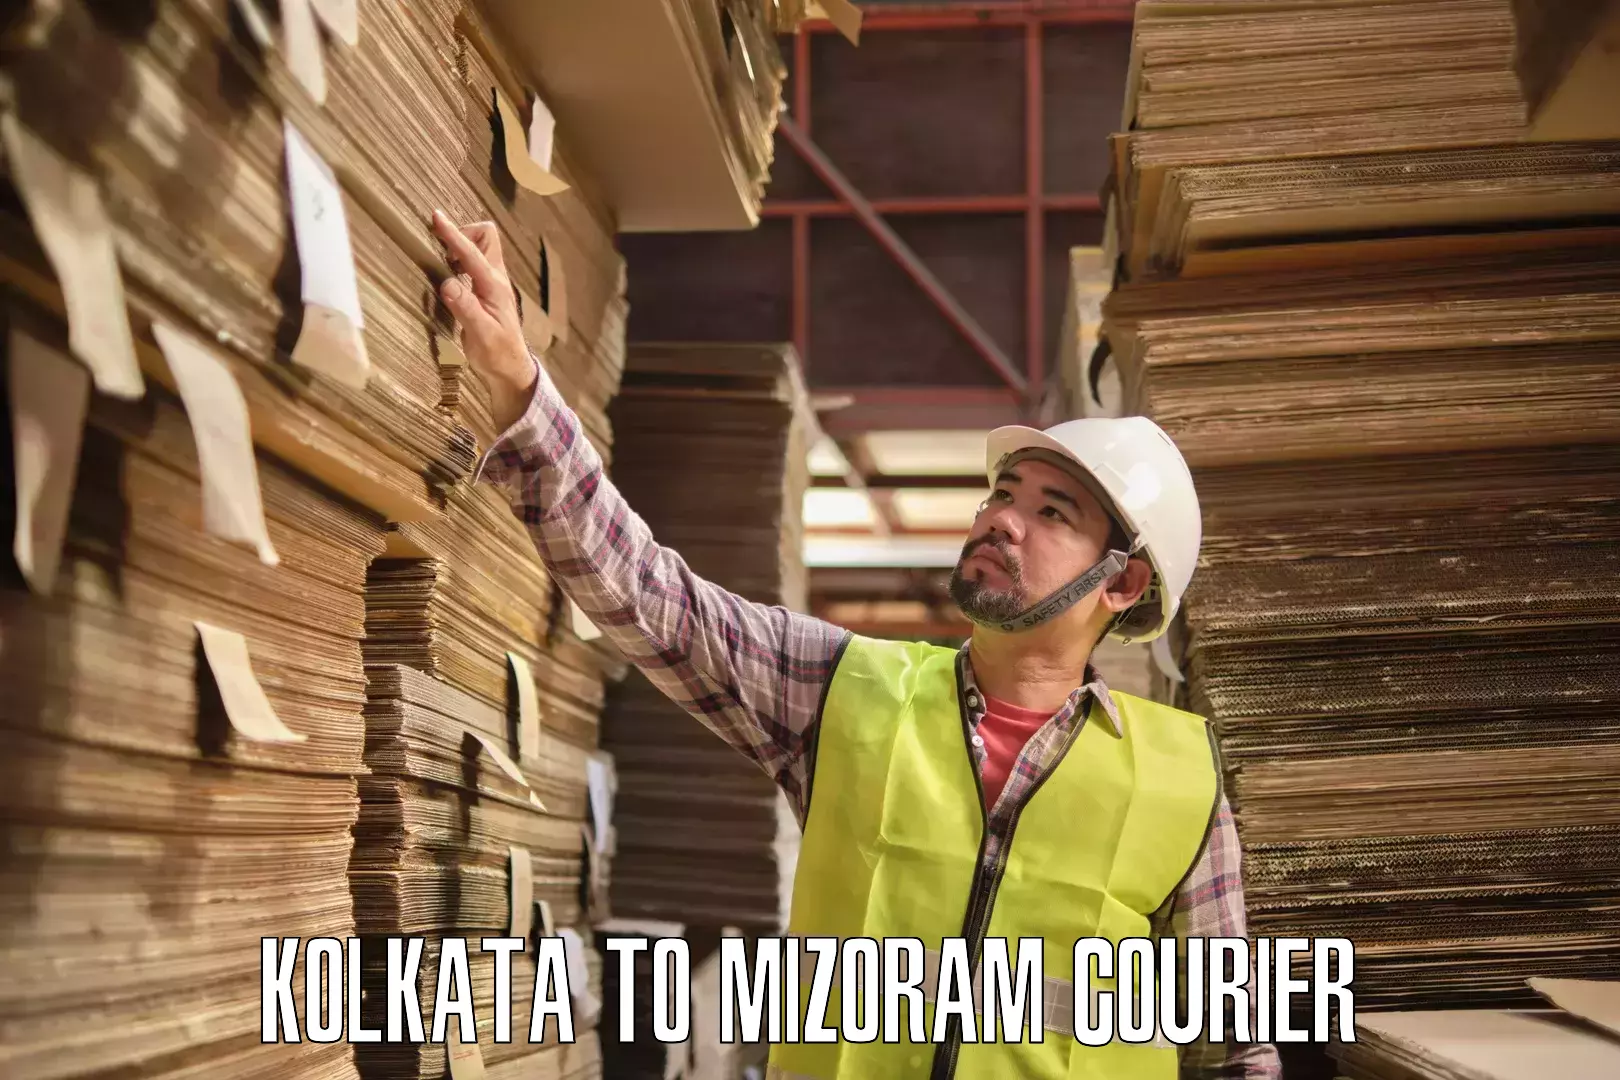 Courier dispatch services Kolkata to Thenzawl